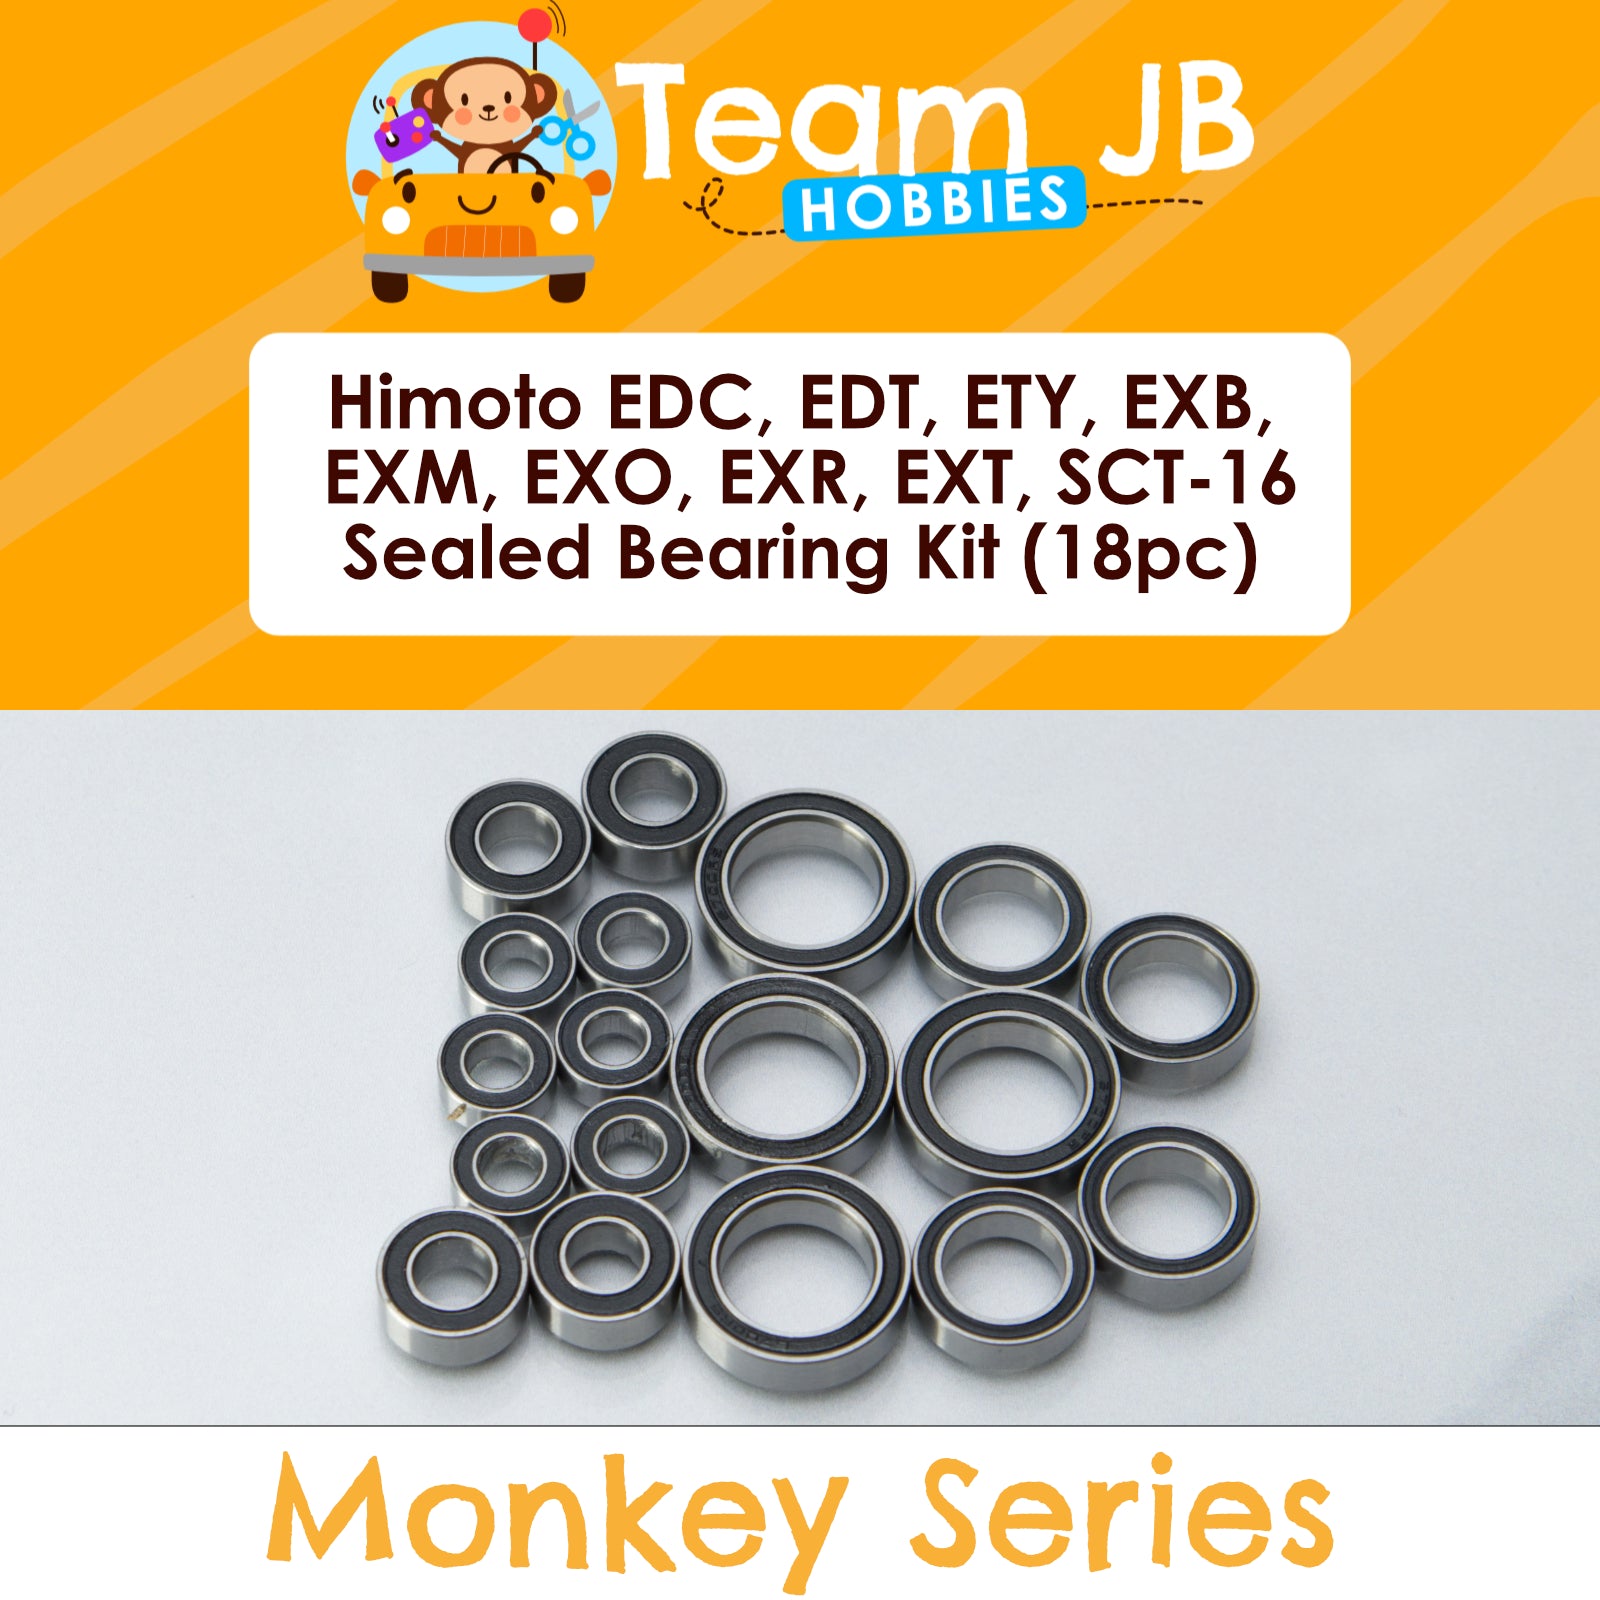 Himoto EDC, EDT, ETY, EXB, EXM, EXO, EXR, EXT, SCT-16 - Sealed Bearing Kit